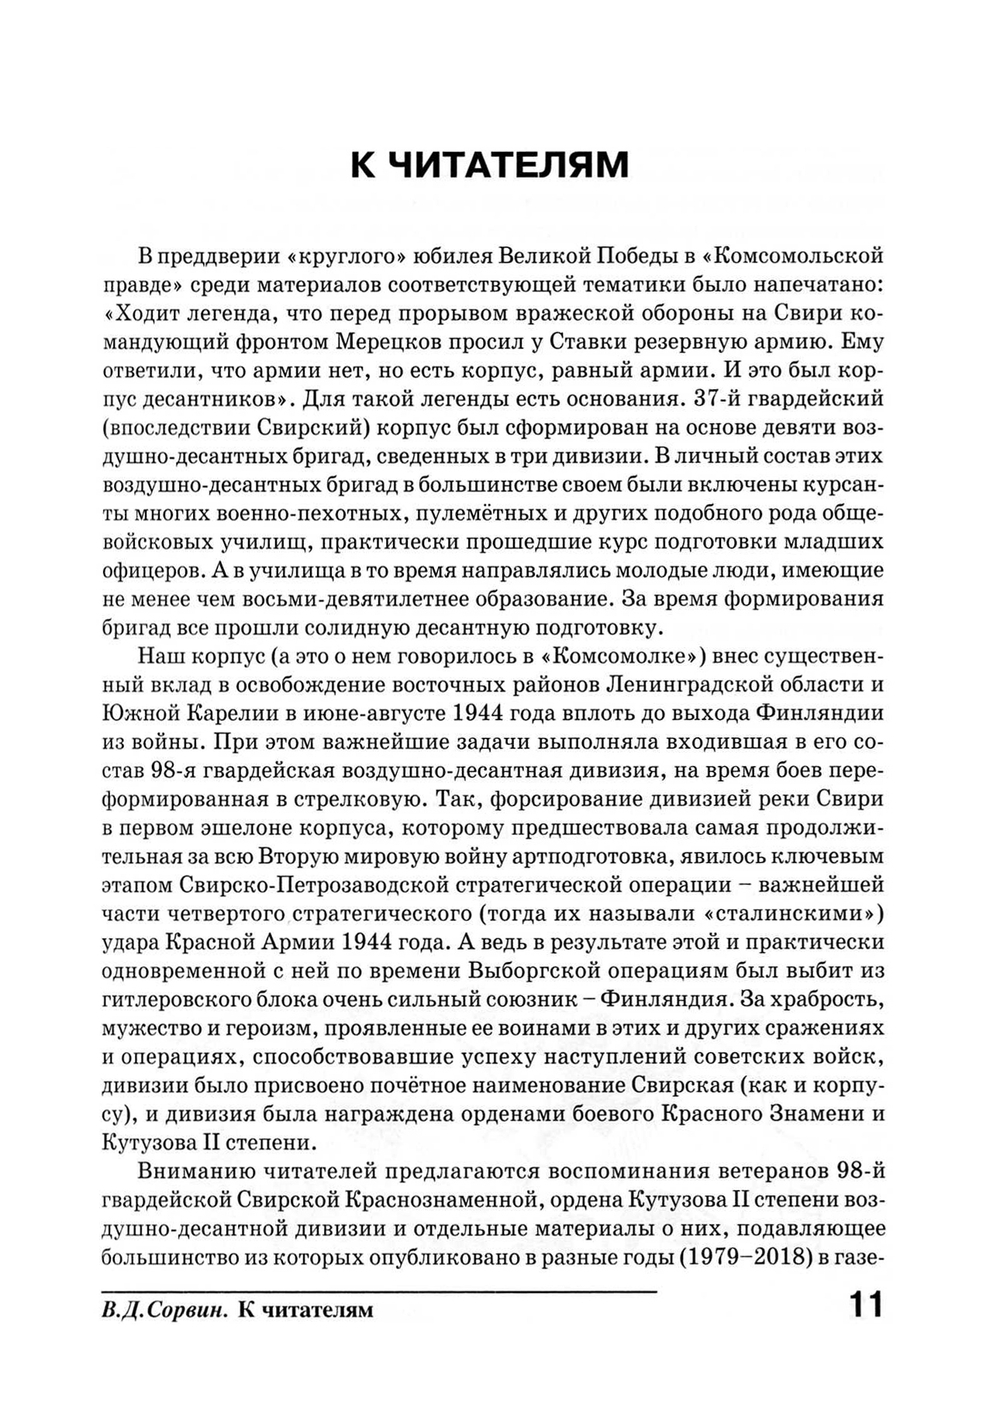 Сорвин В.Д. Легенды гвардейской Свирской. 2-е изд., расш и доп.